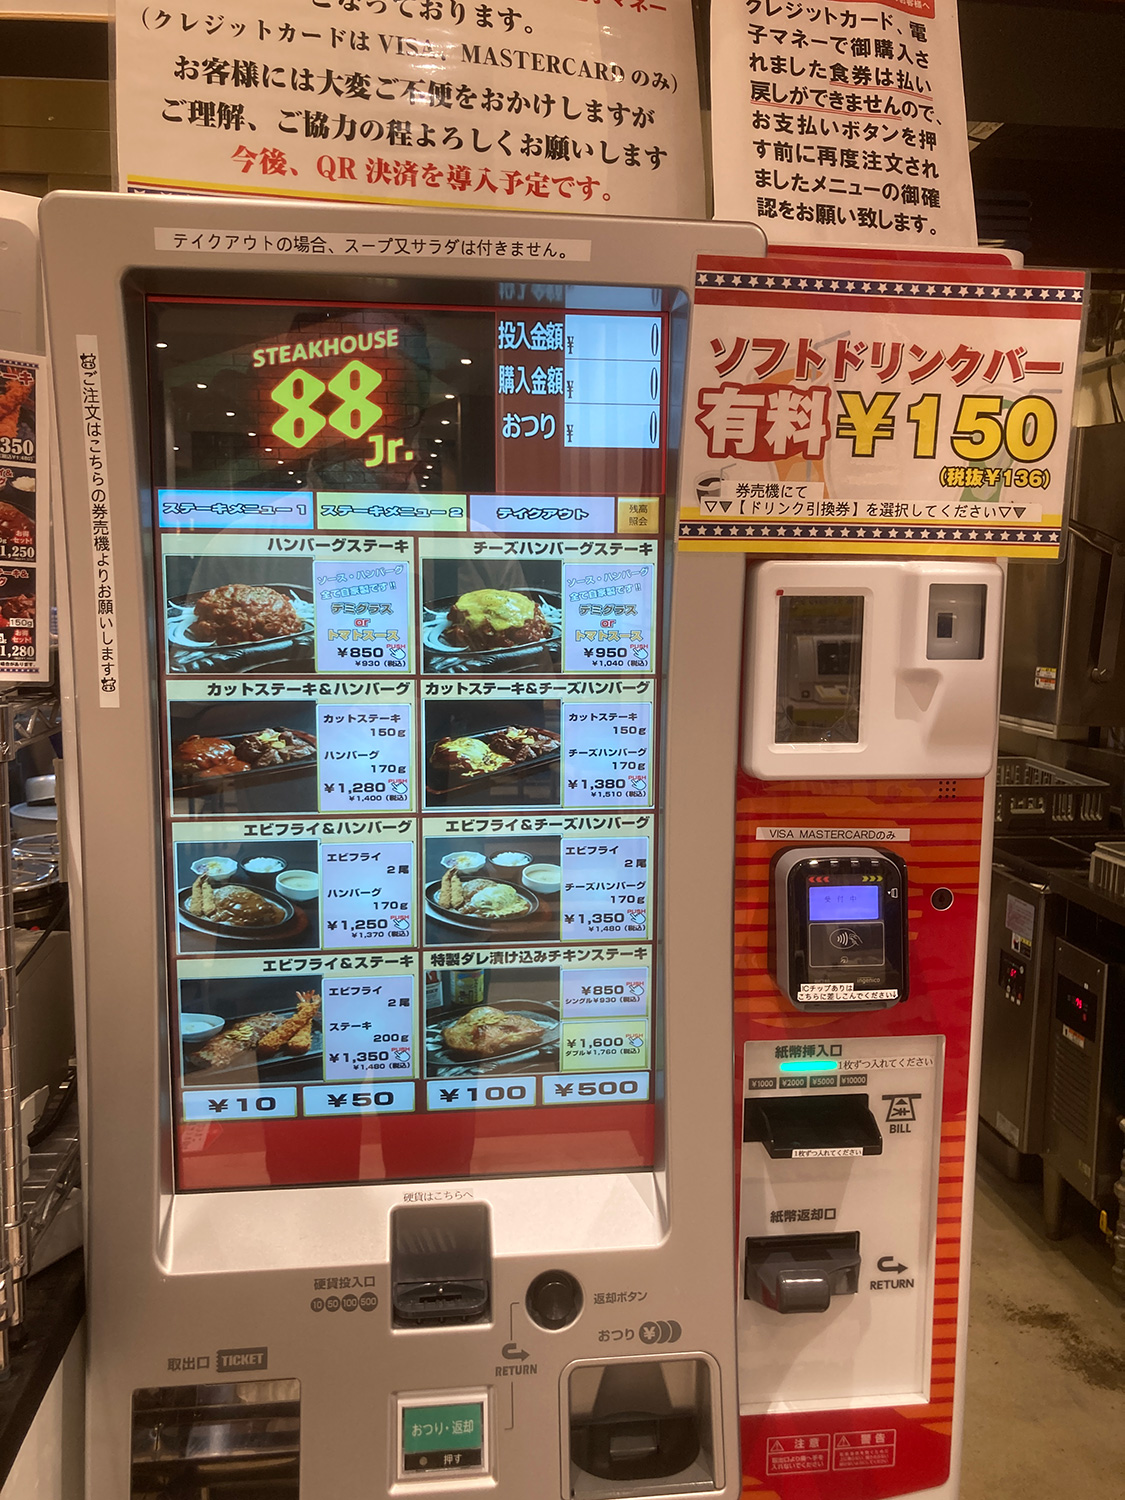 注文は食券規制です。<br>「ソフトドリンクバー有料」とありますが、<br><a href="https://iroiro-okinawa.com/area/st/post-7628/">クーポン</a>があるのでご利用くださいまし。